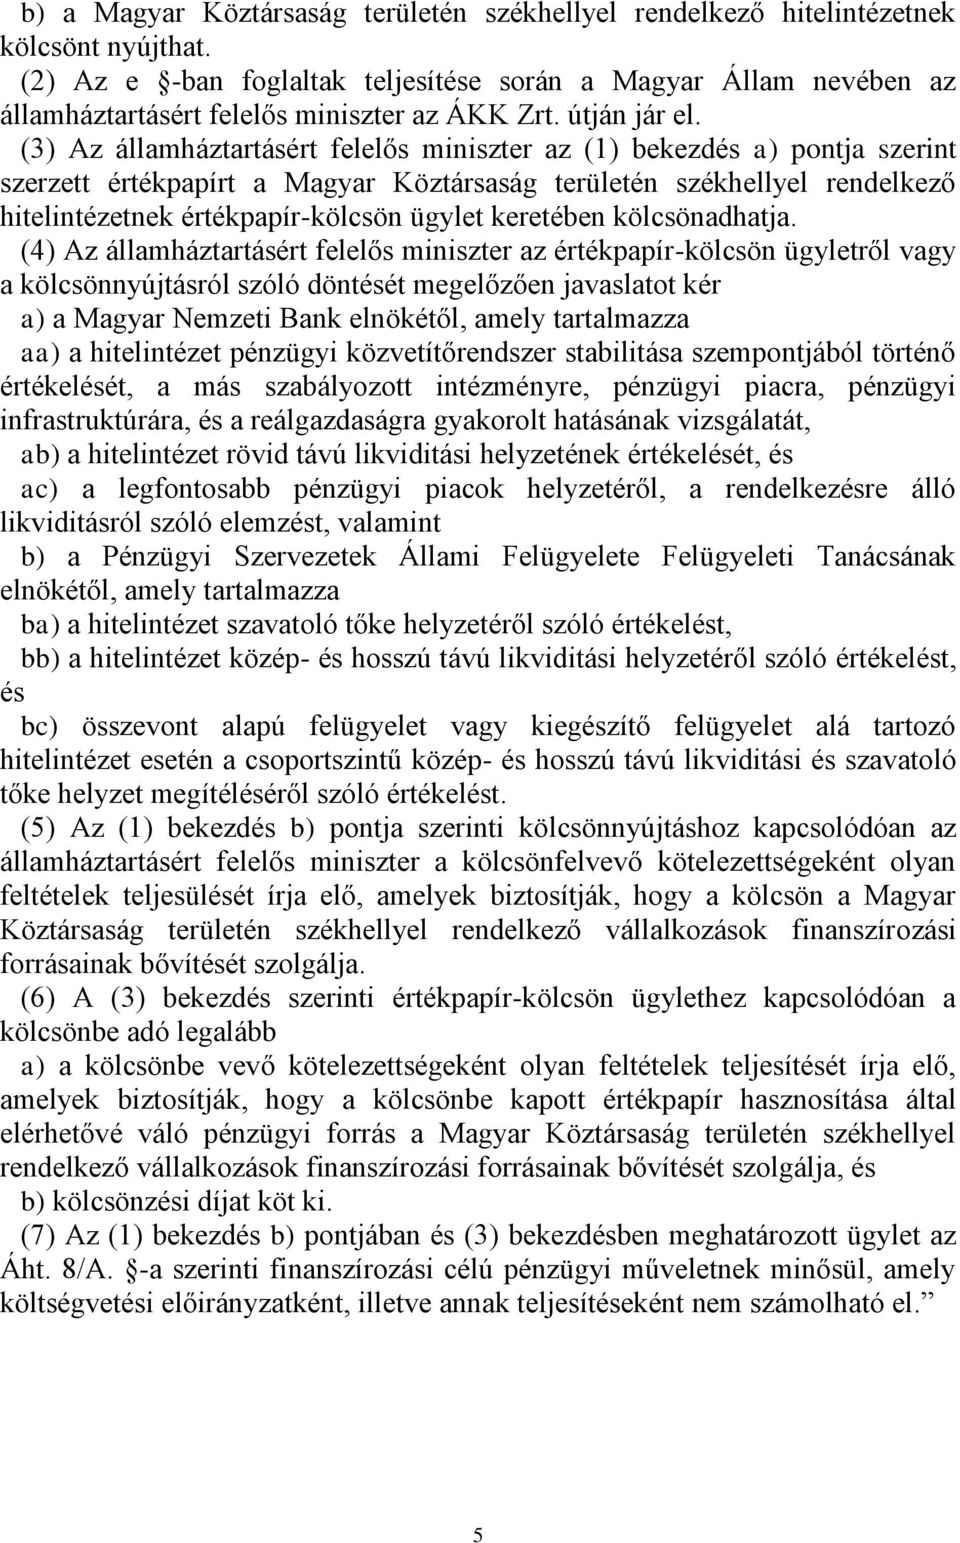 (3) Az államháztartásért felelős miniszter az (1) bekezdés a) pontja szerint szerzett értékpapírt a Magyar Köztársaság területén székhellyel rendelkező hitelintézetnek értékpapír-kölcsön ügylet